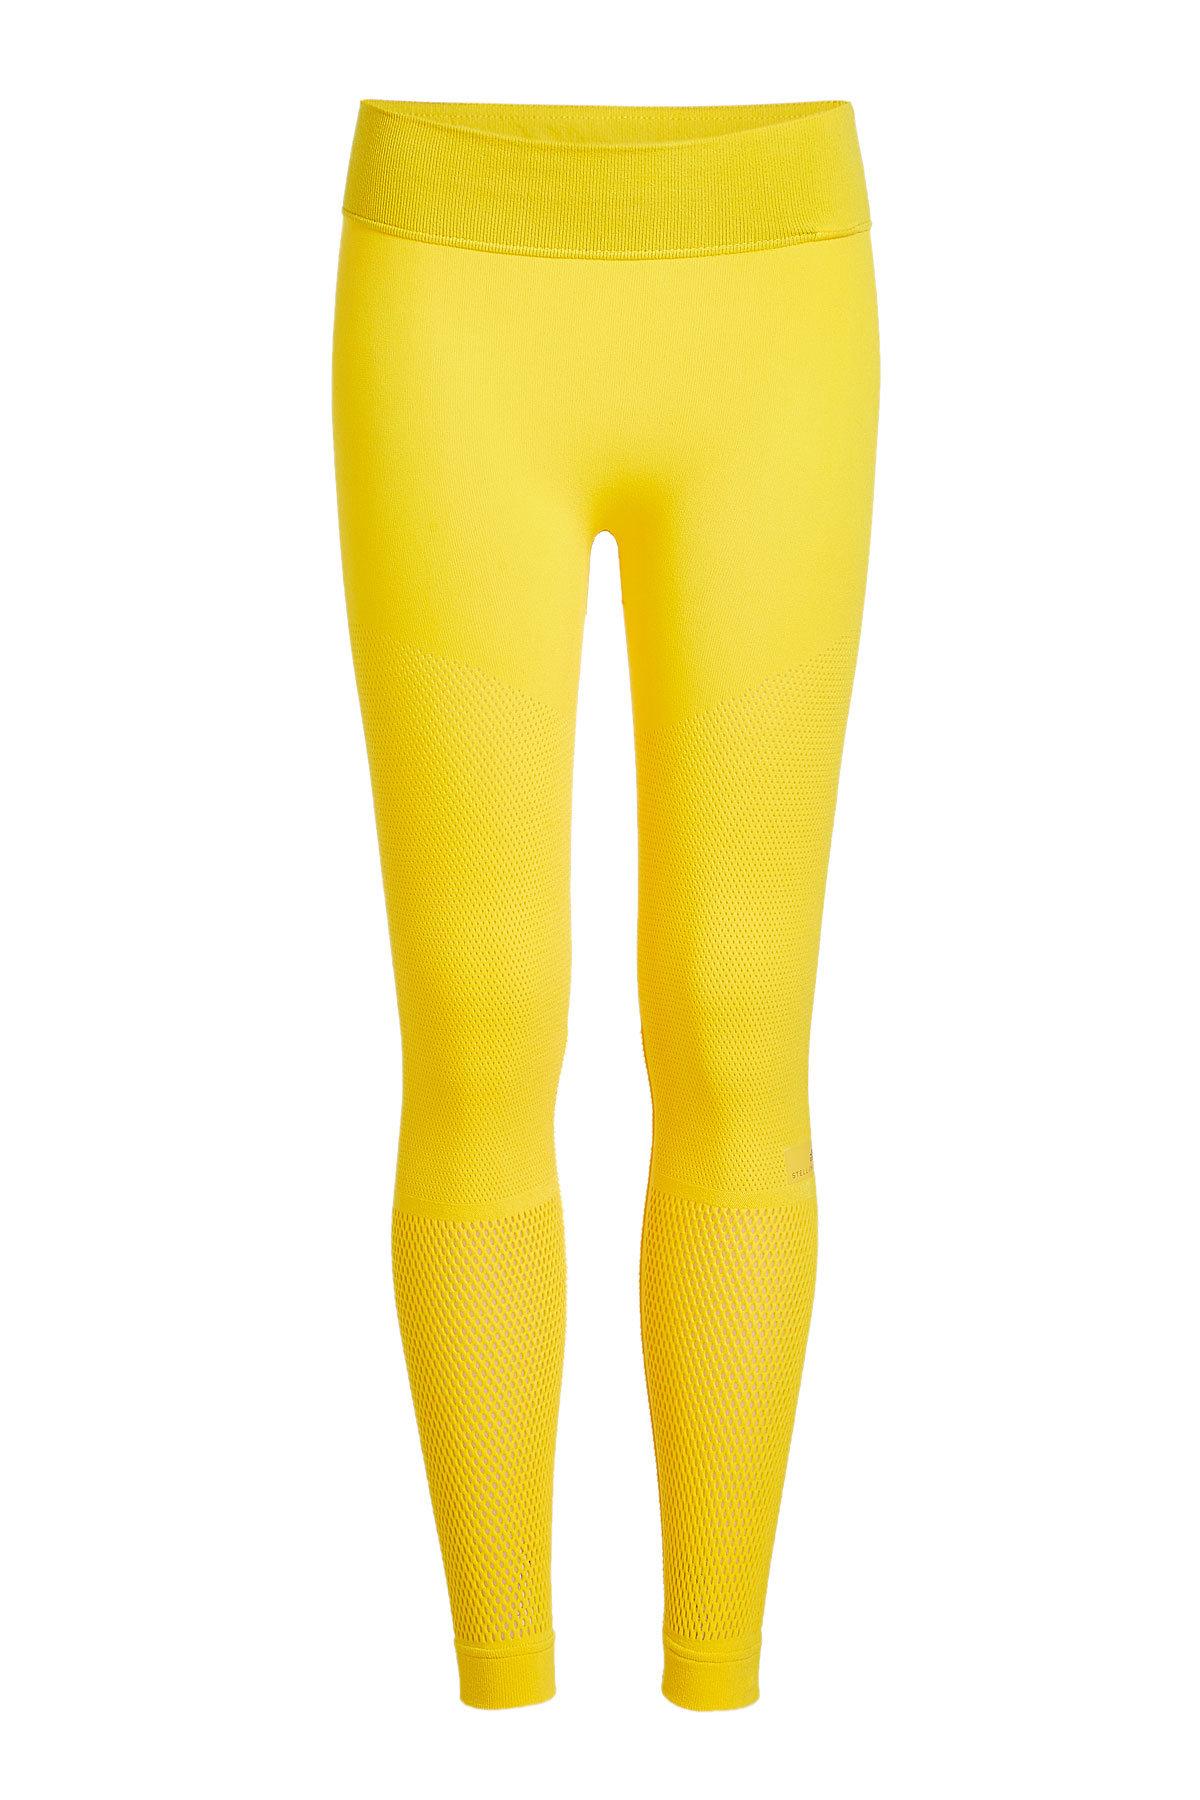 yellow adidas tights